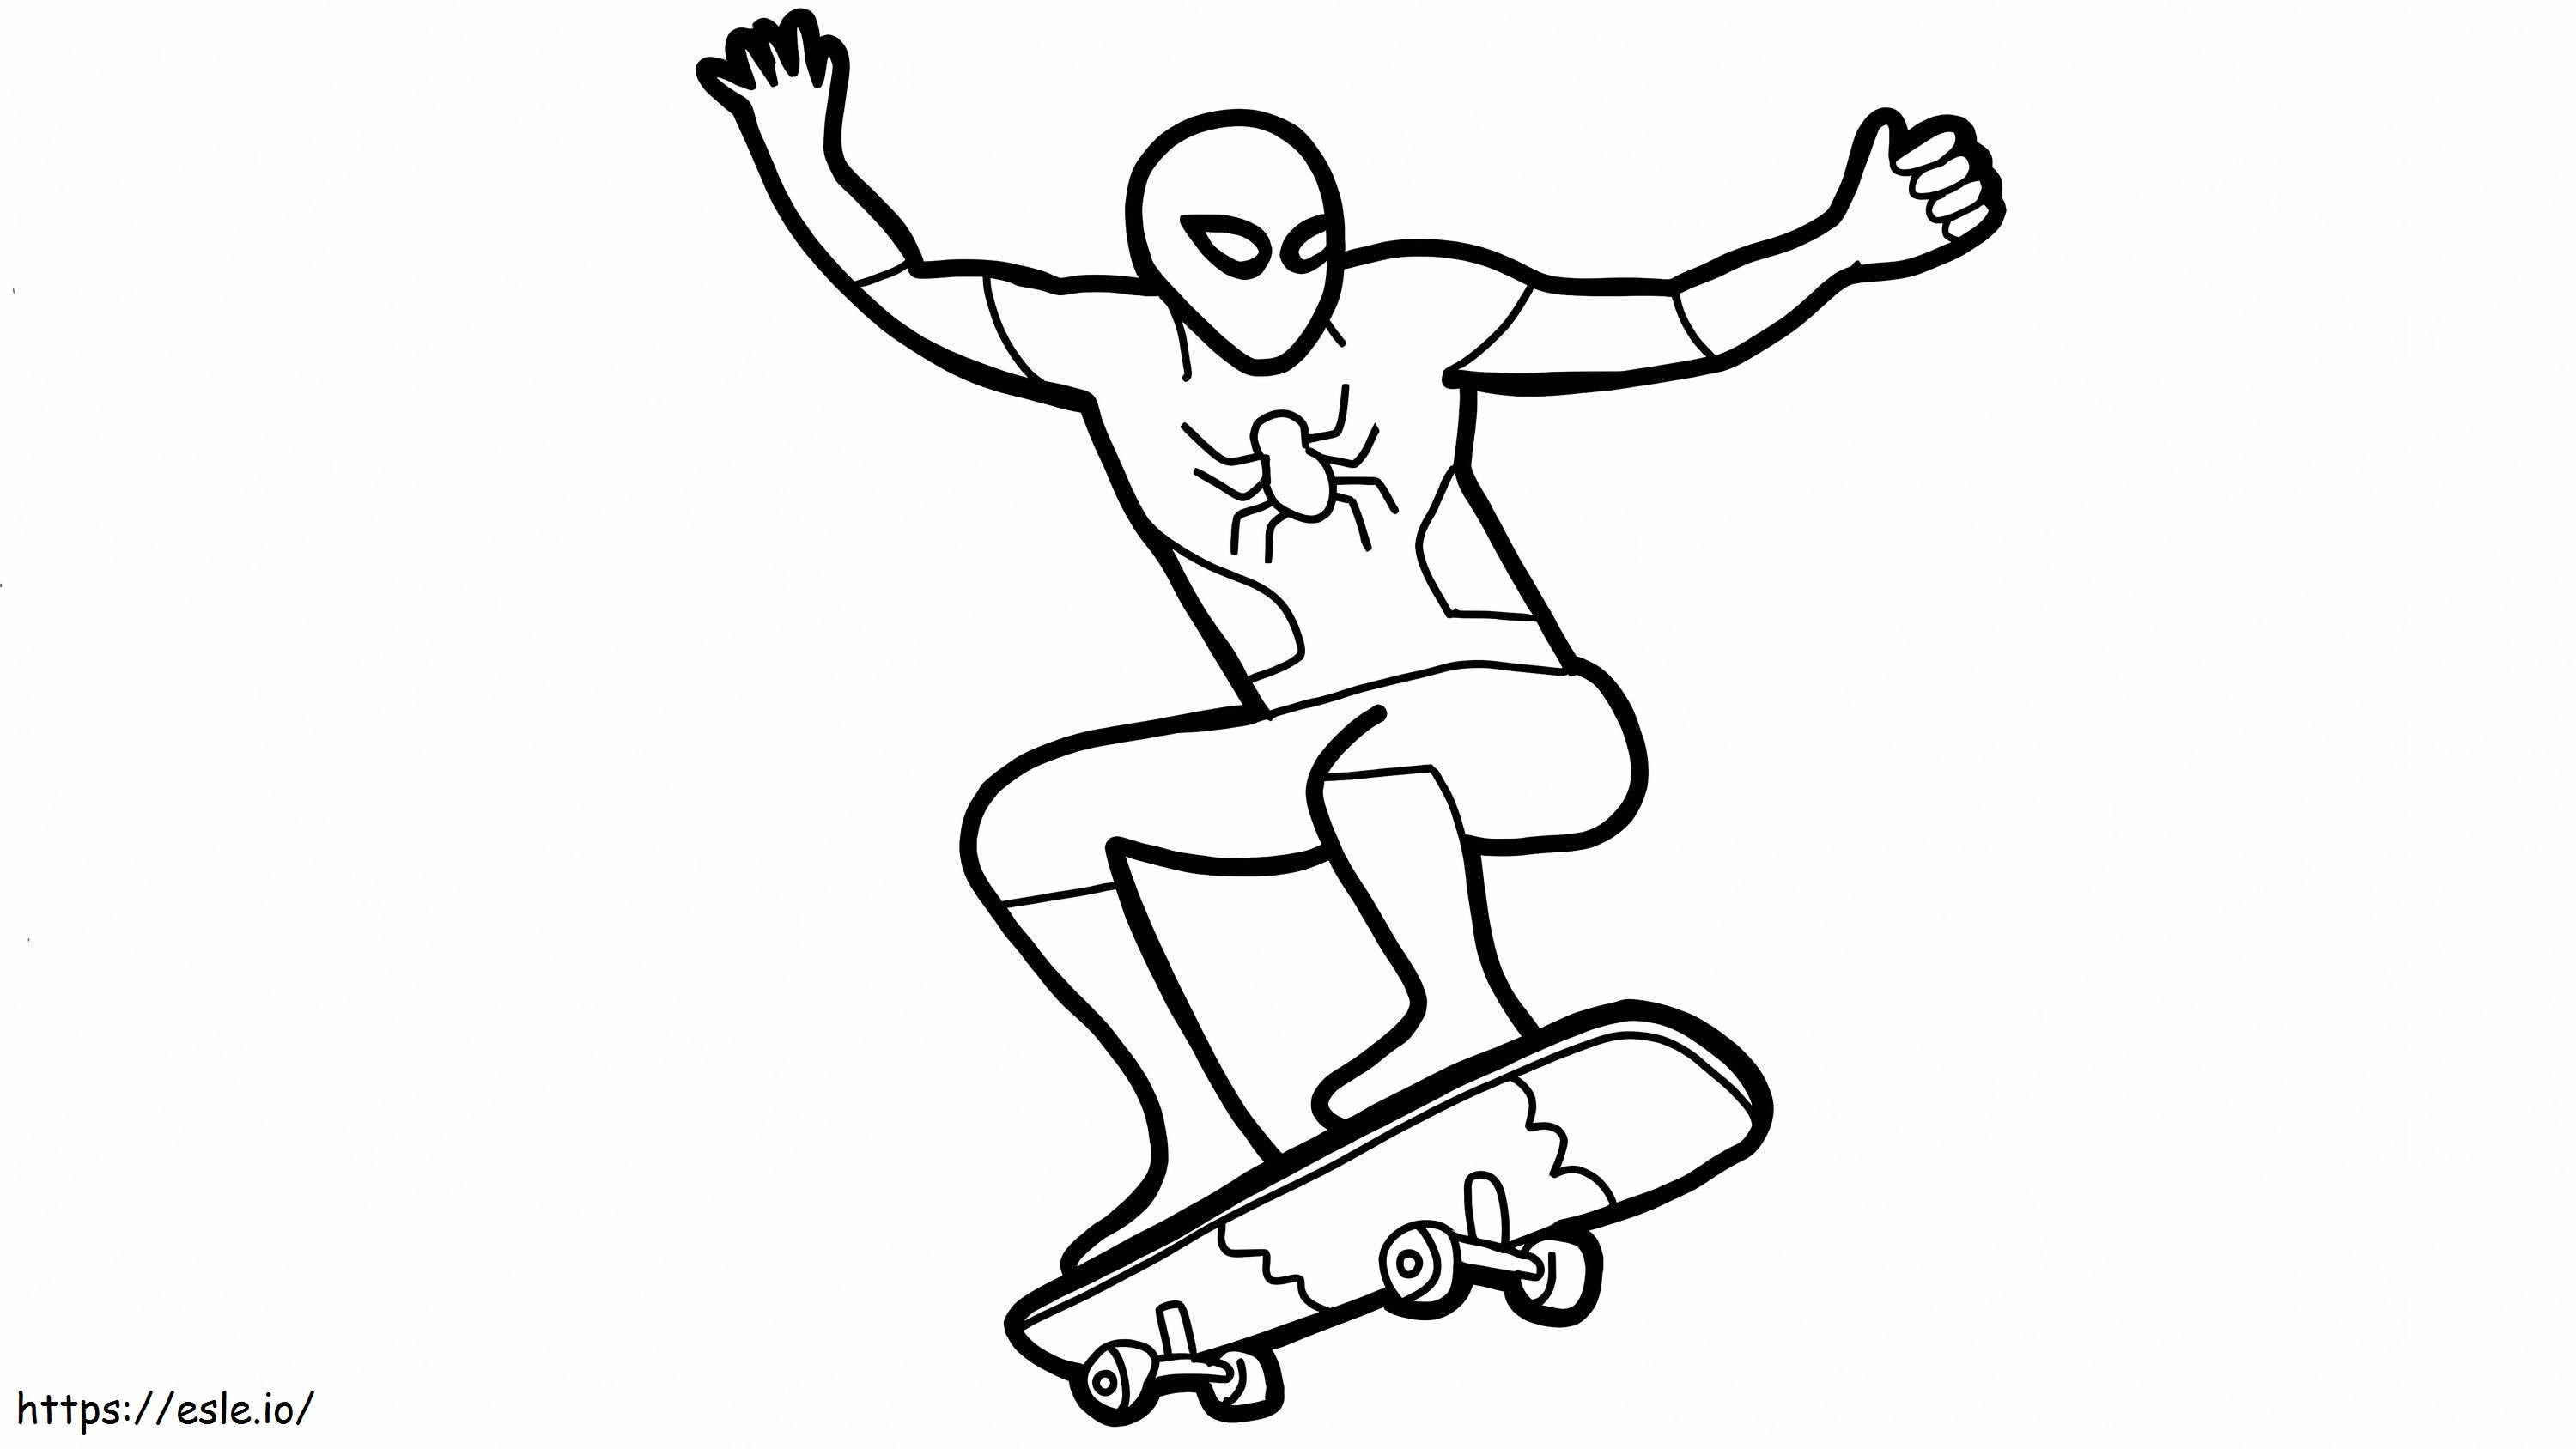 homem aranha e skate para colorir